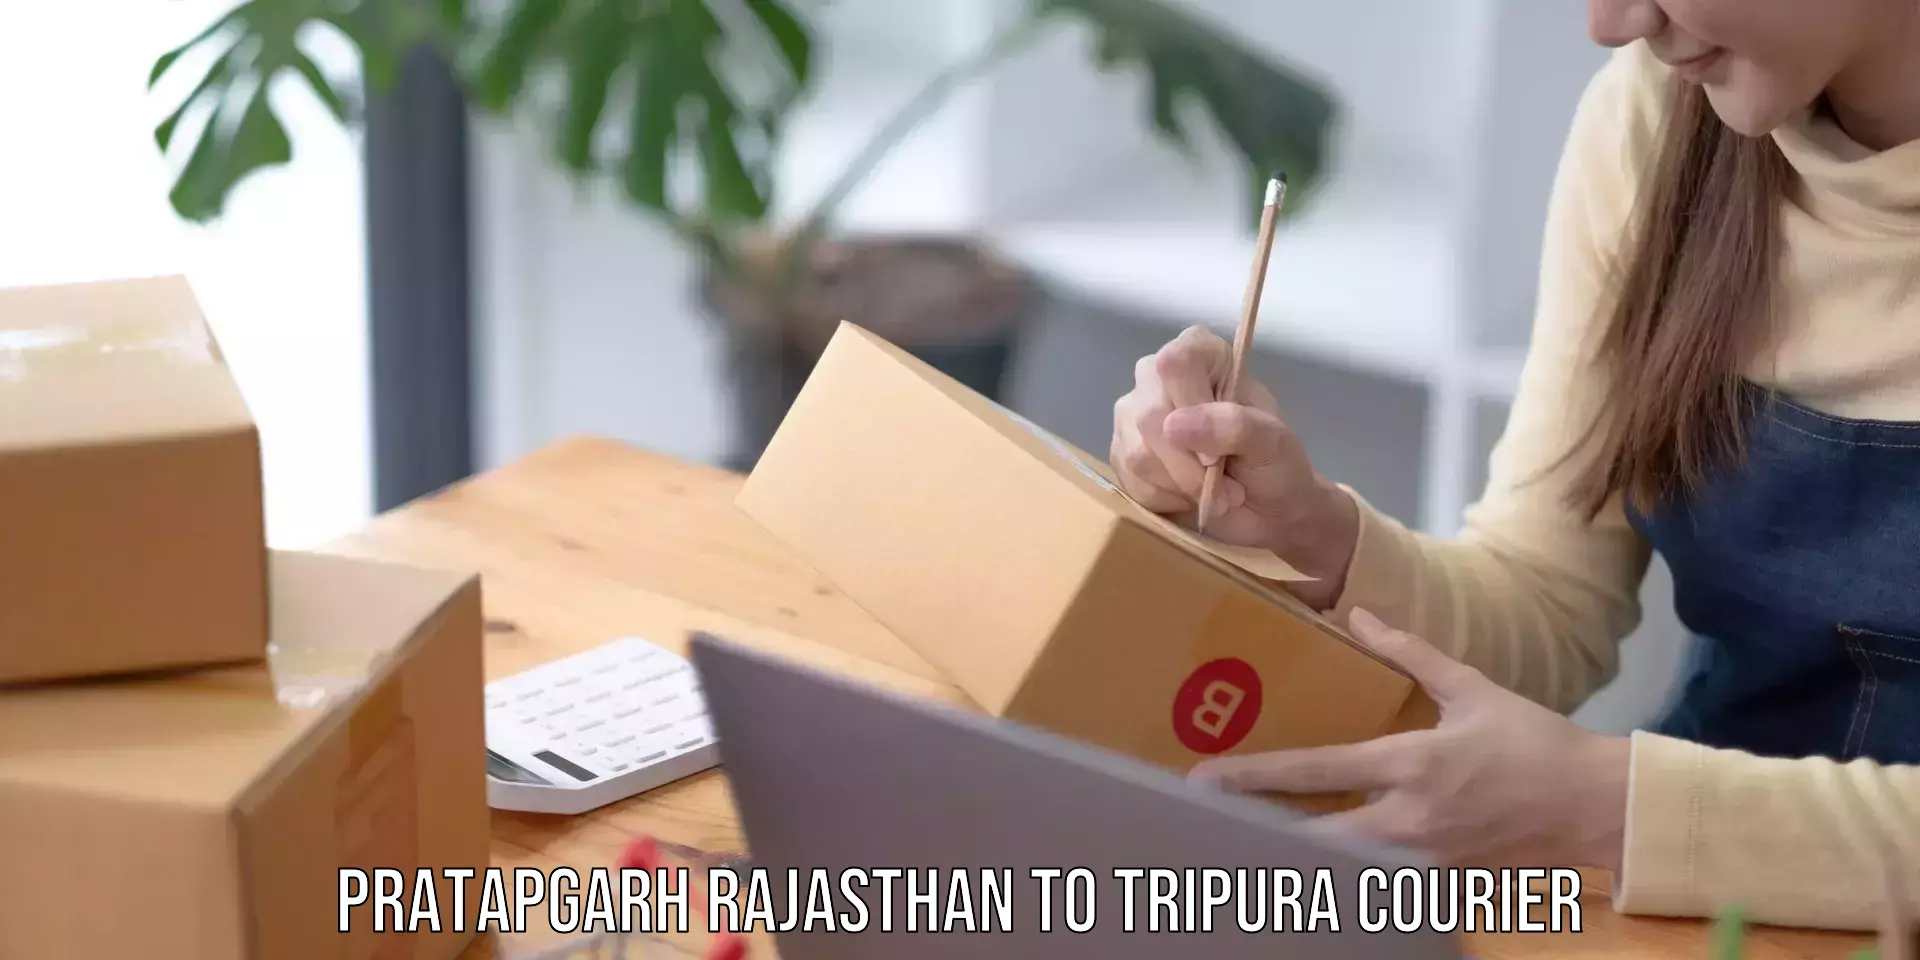 Large package courier Pratapgarh Rajasthan to Tripura